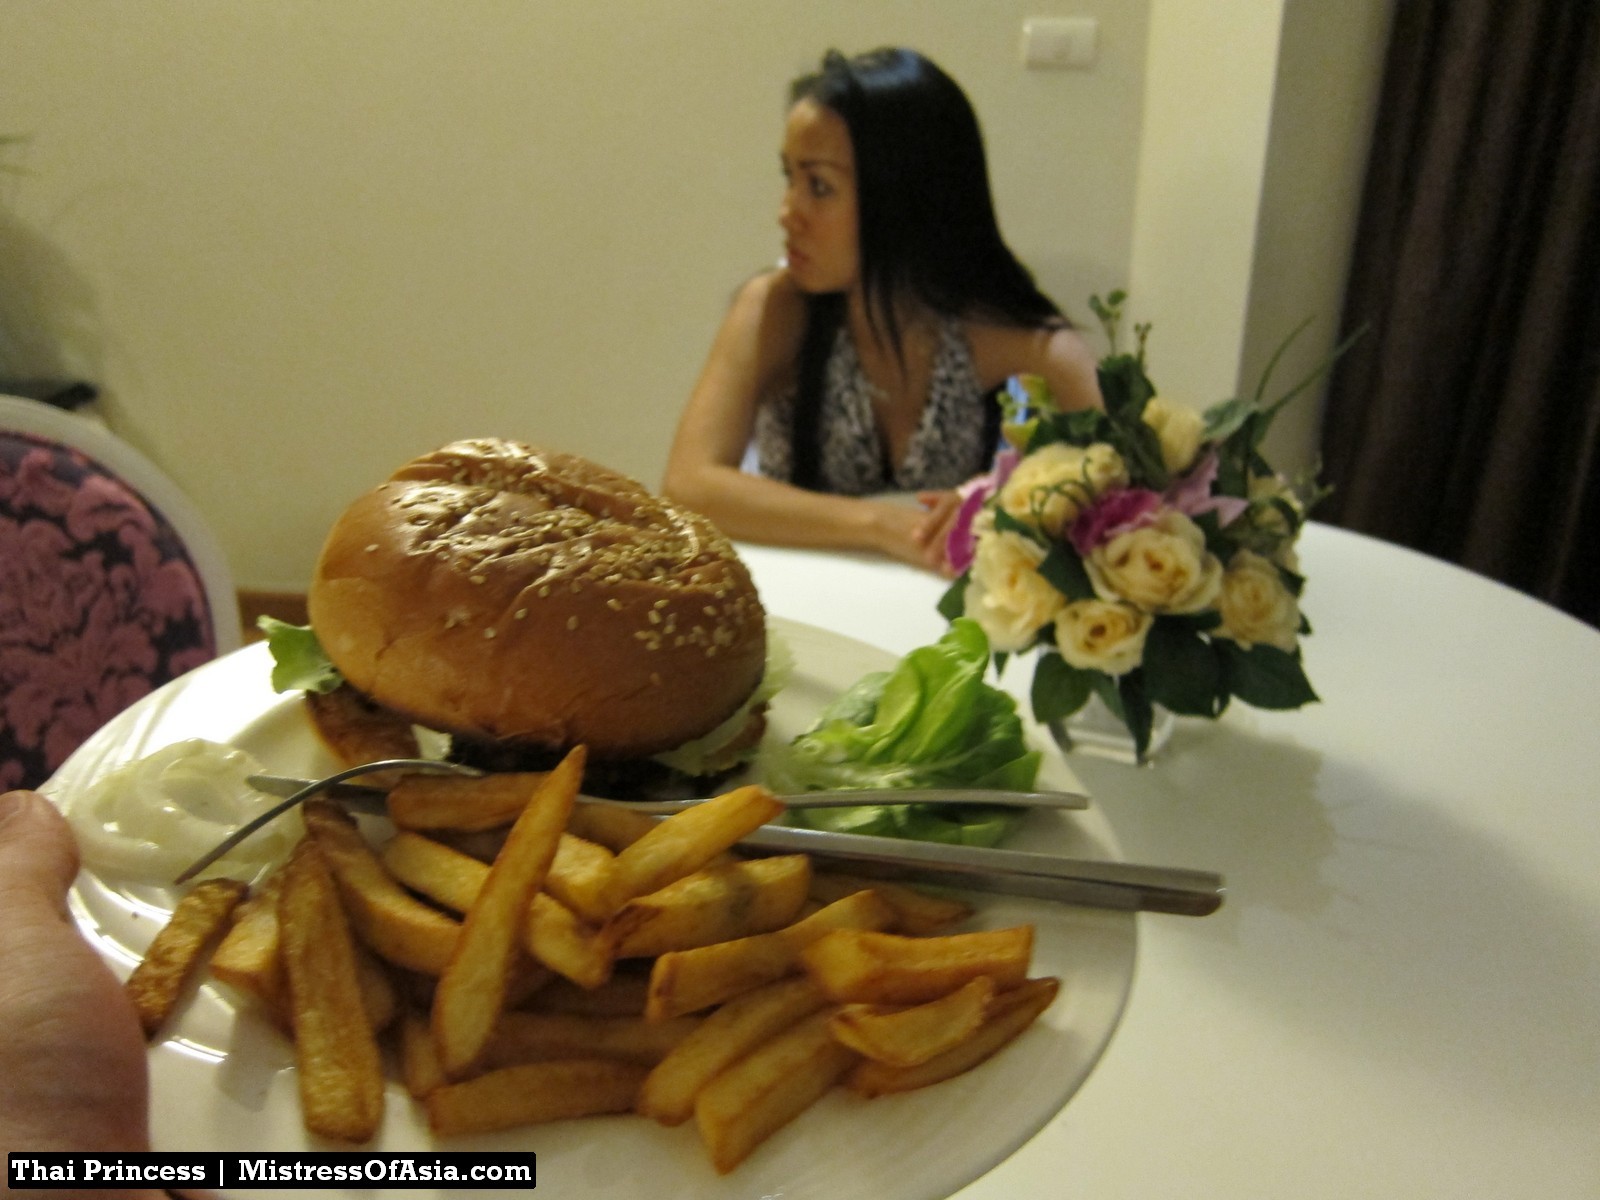 Princesa tailandesa comiendo hamburguesa
 #69740238